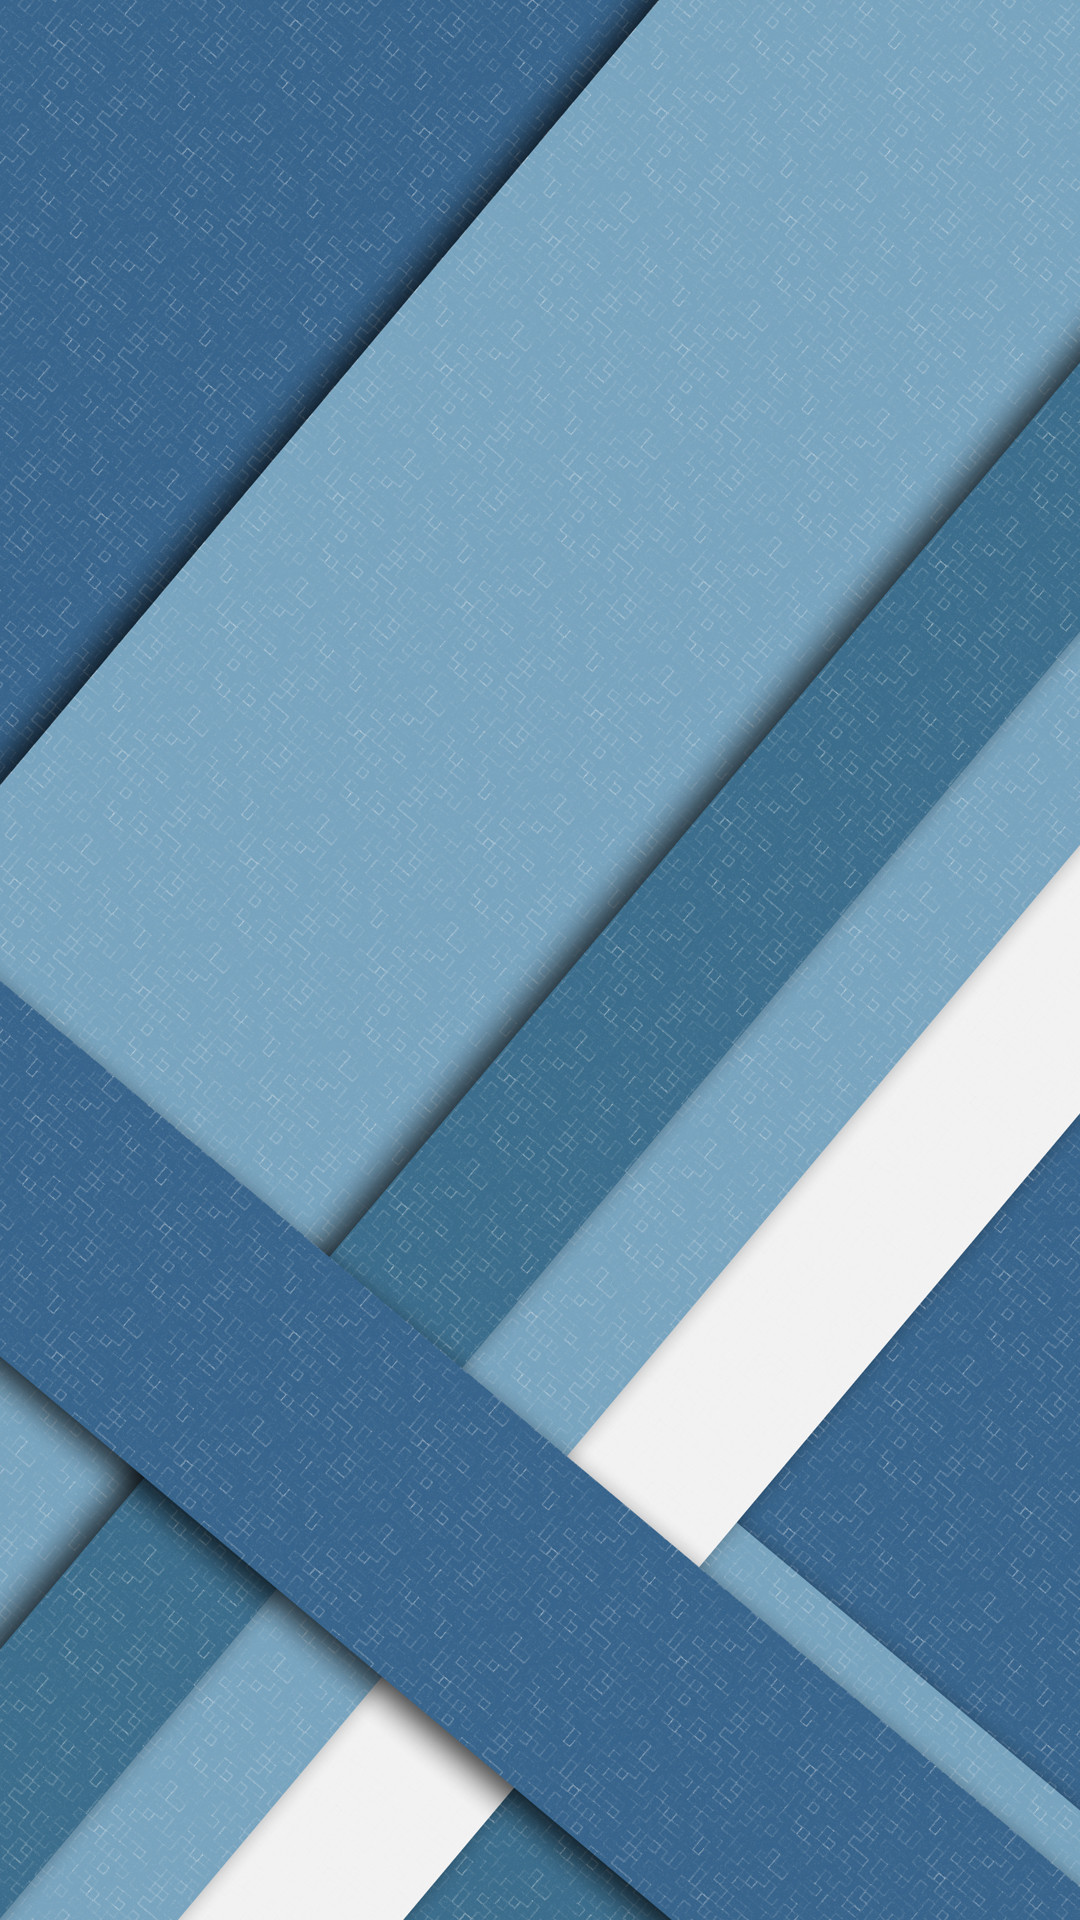 1080x1920 Material Design Mobile HD Wallpaper14 - Vactual Papers Â· Blue  WallpapersWallpaper ...